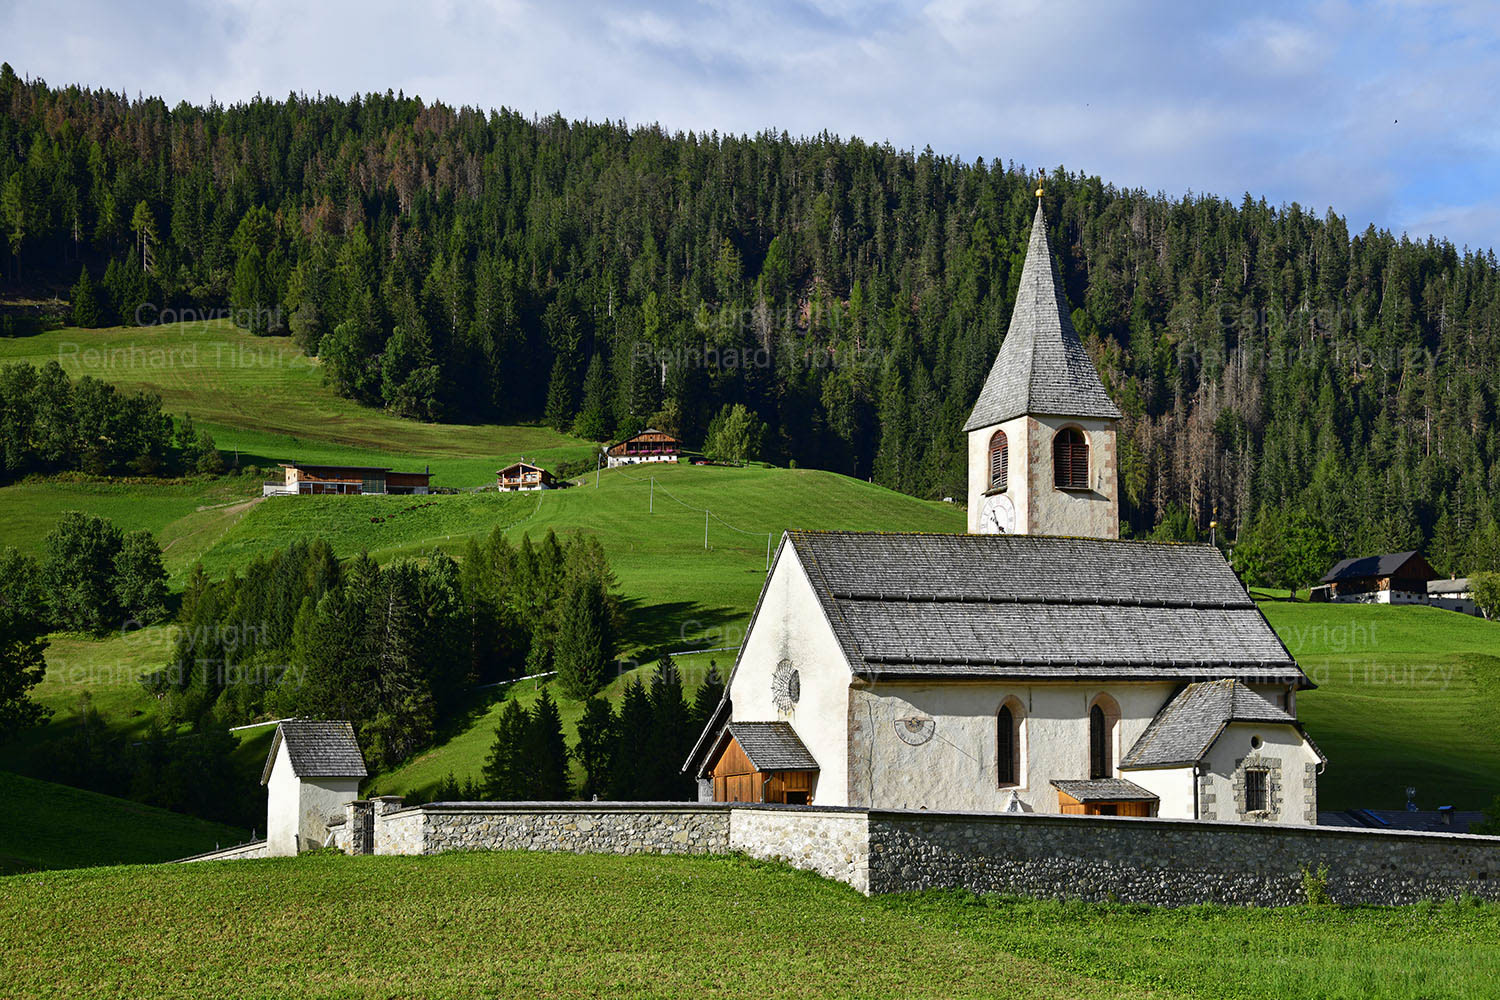 Church, St. Veit, South Tyrol, Italy